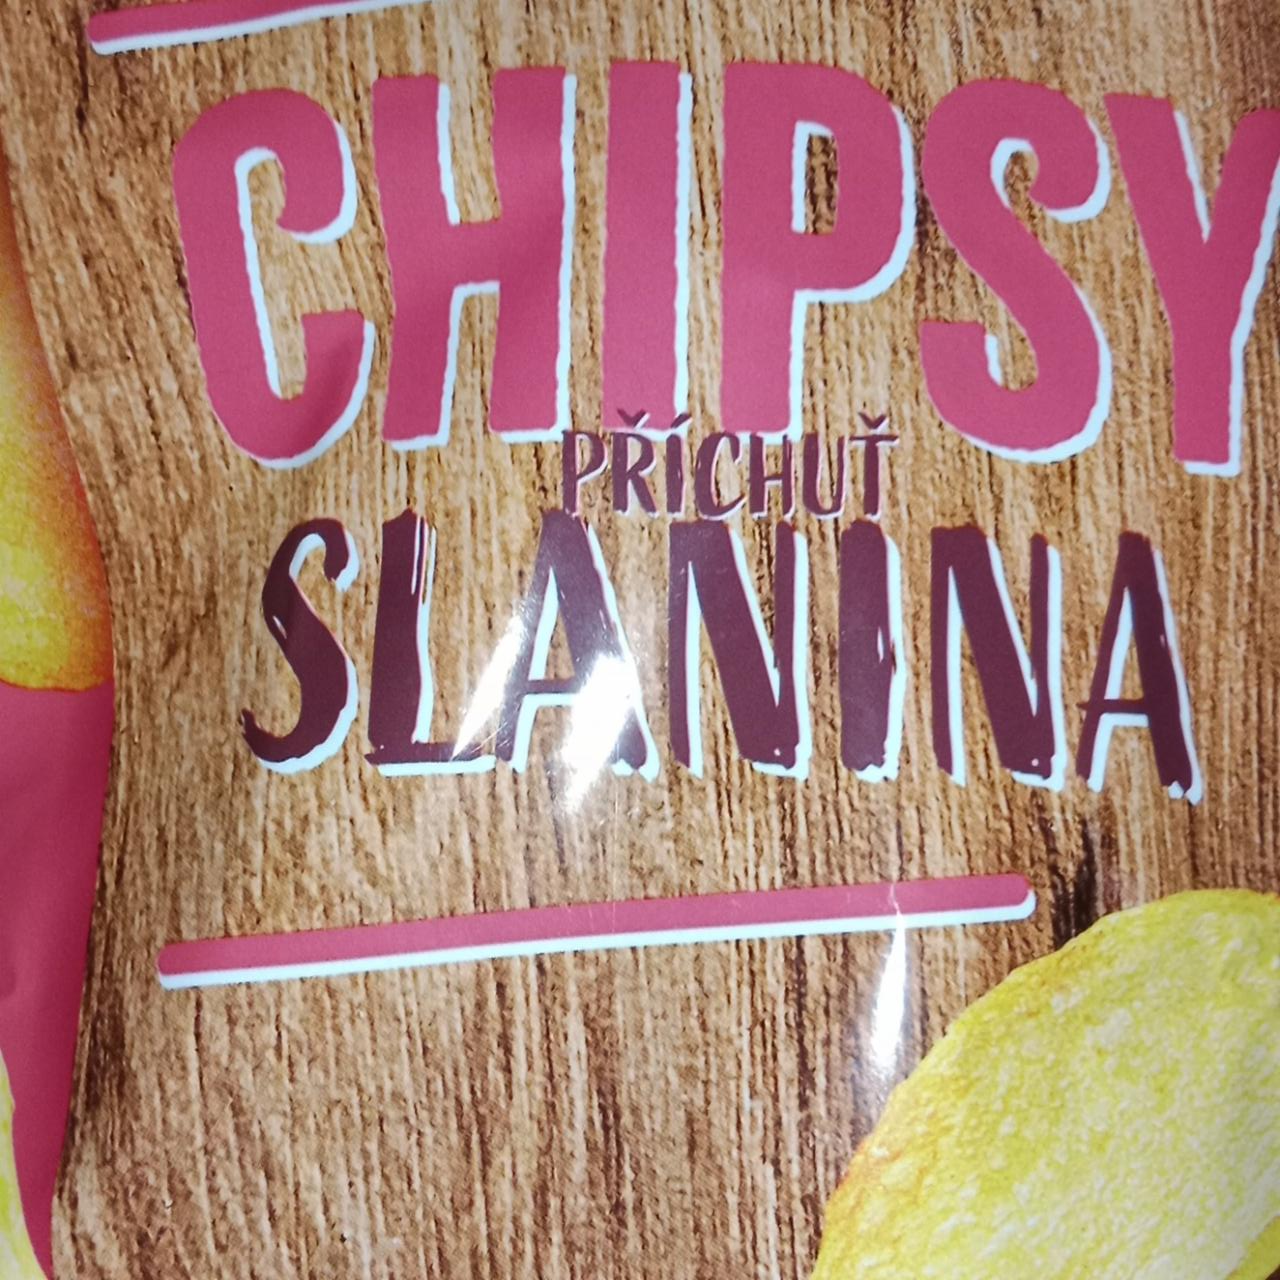 Fotografie - Chipsy příchuť slanina Snack Day